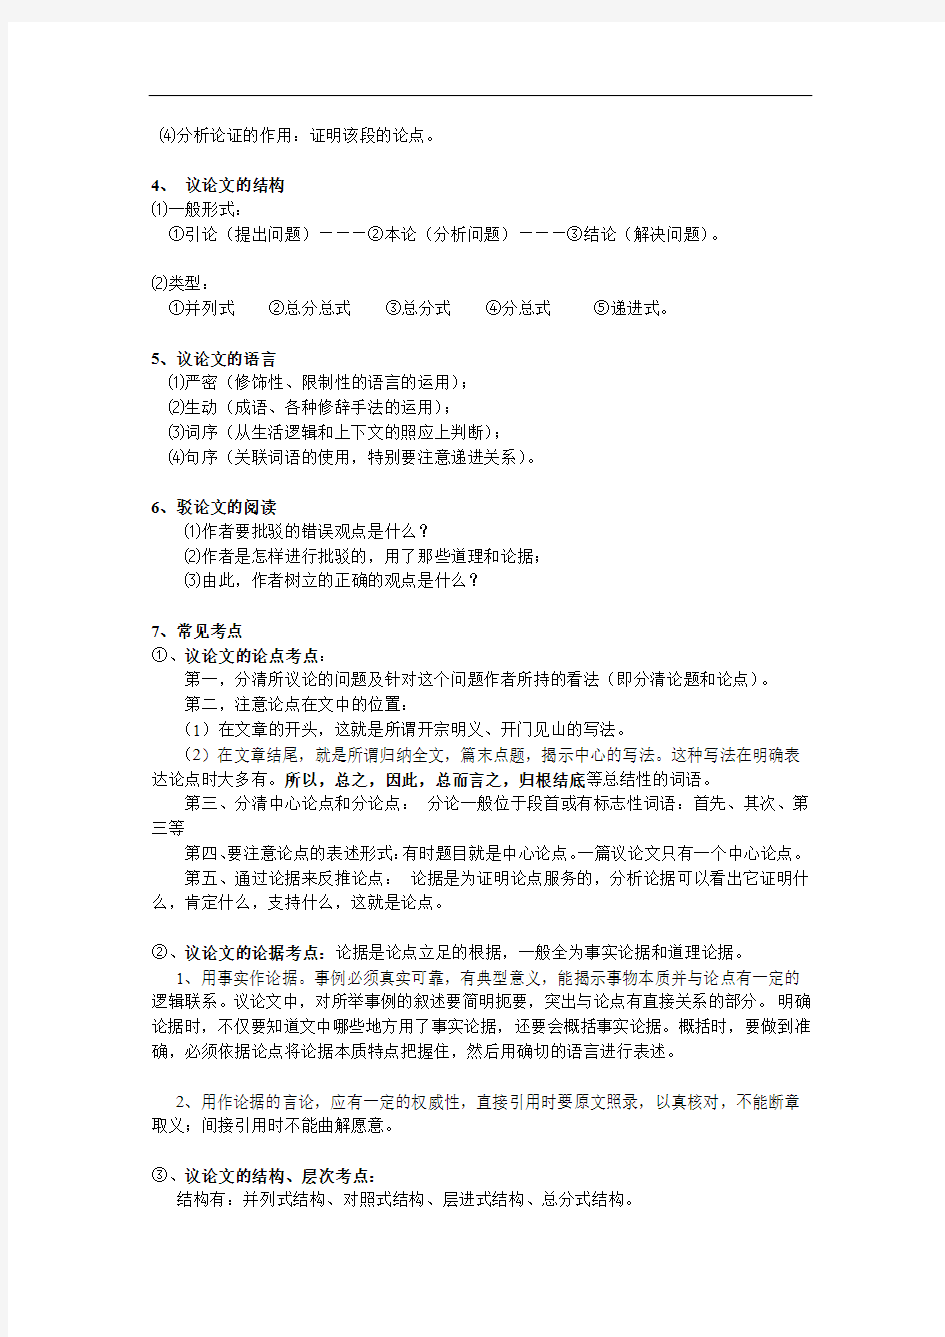 初中语文议论文阅读答题技巧